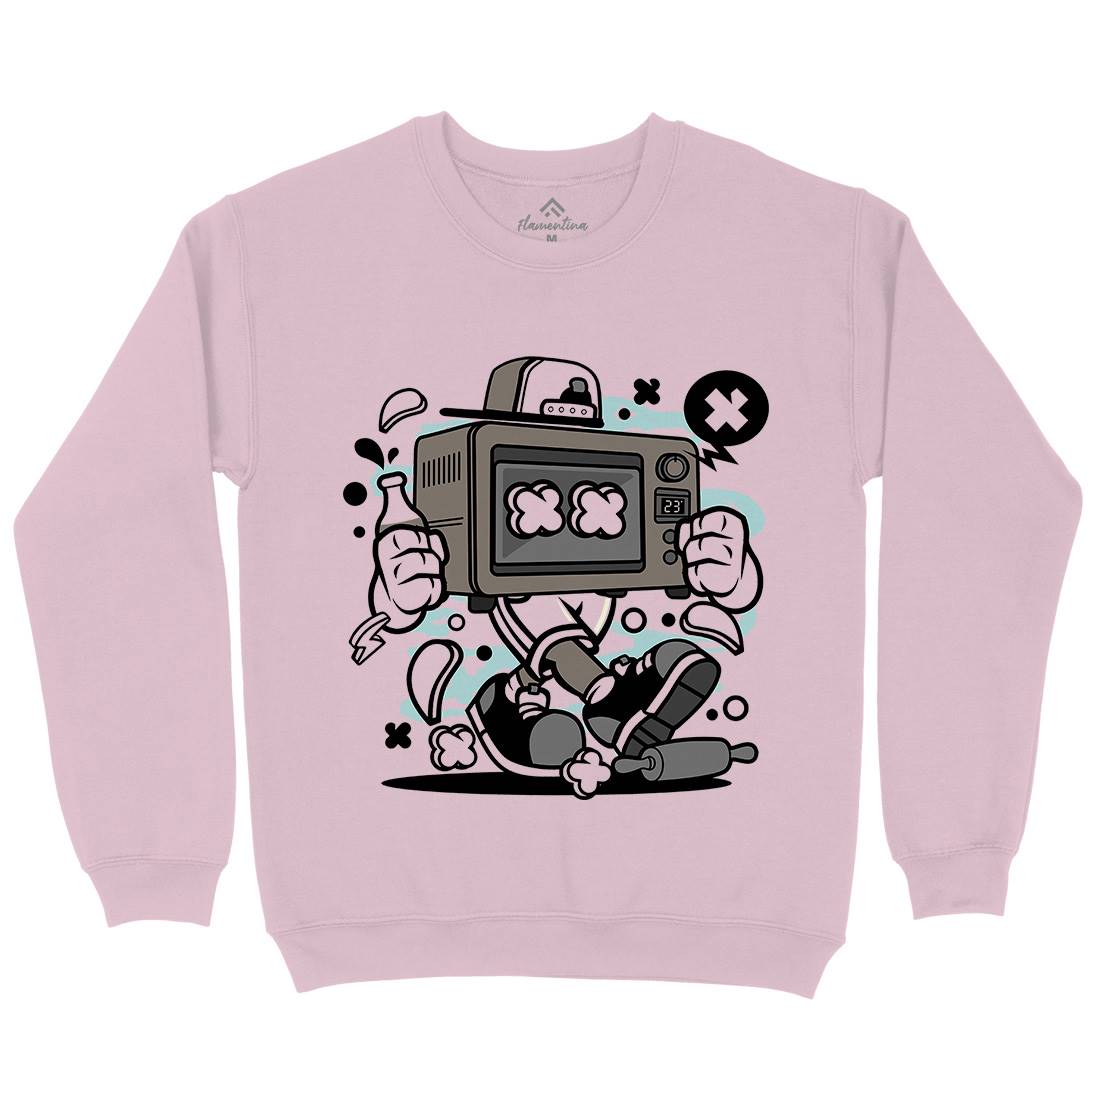 Baking Oven Kids Crew Neck Sweatshirt Retro C013